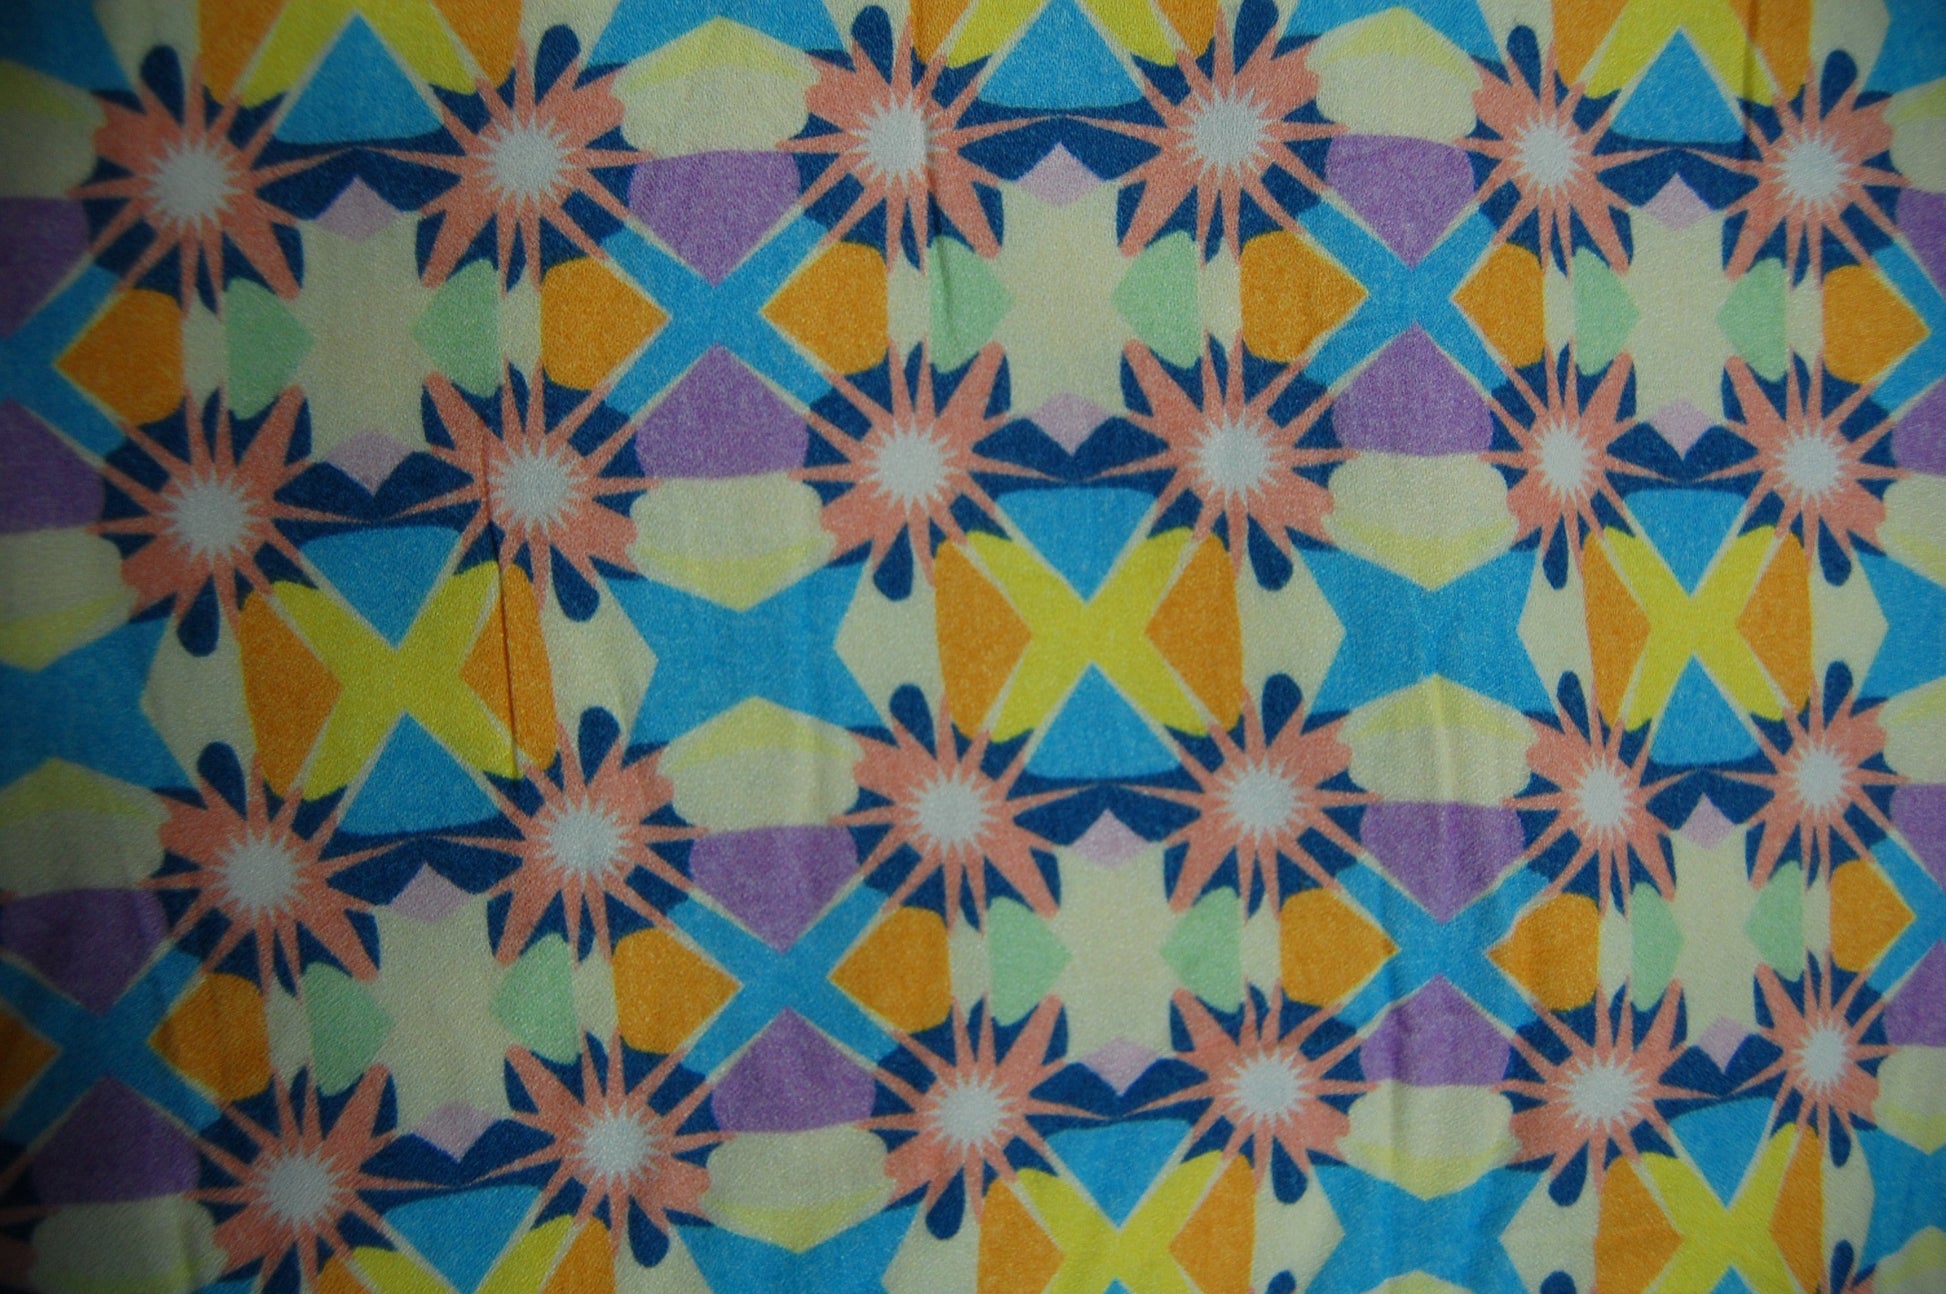 Multi Color Star Print Spun Fabric Trade UNO